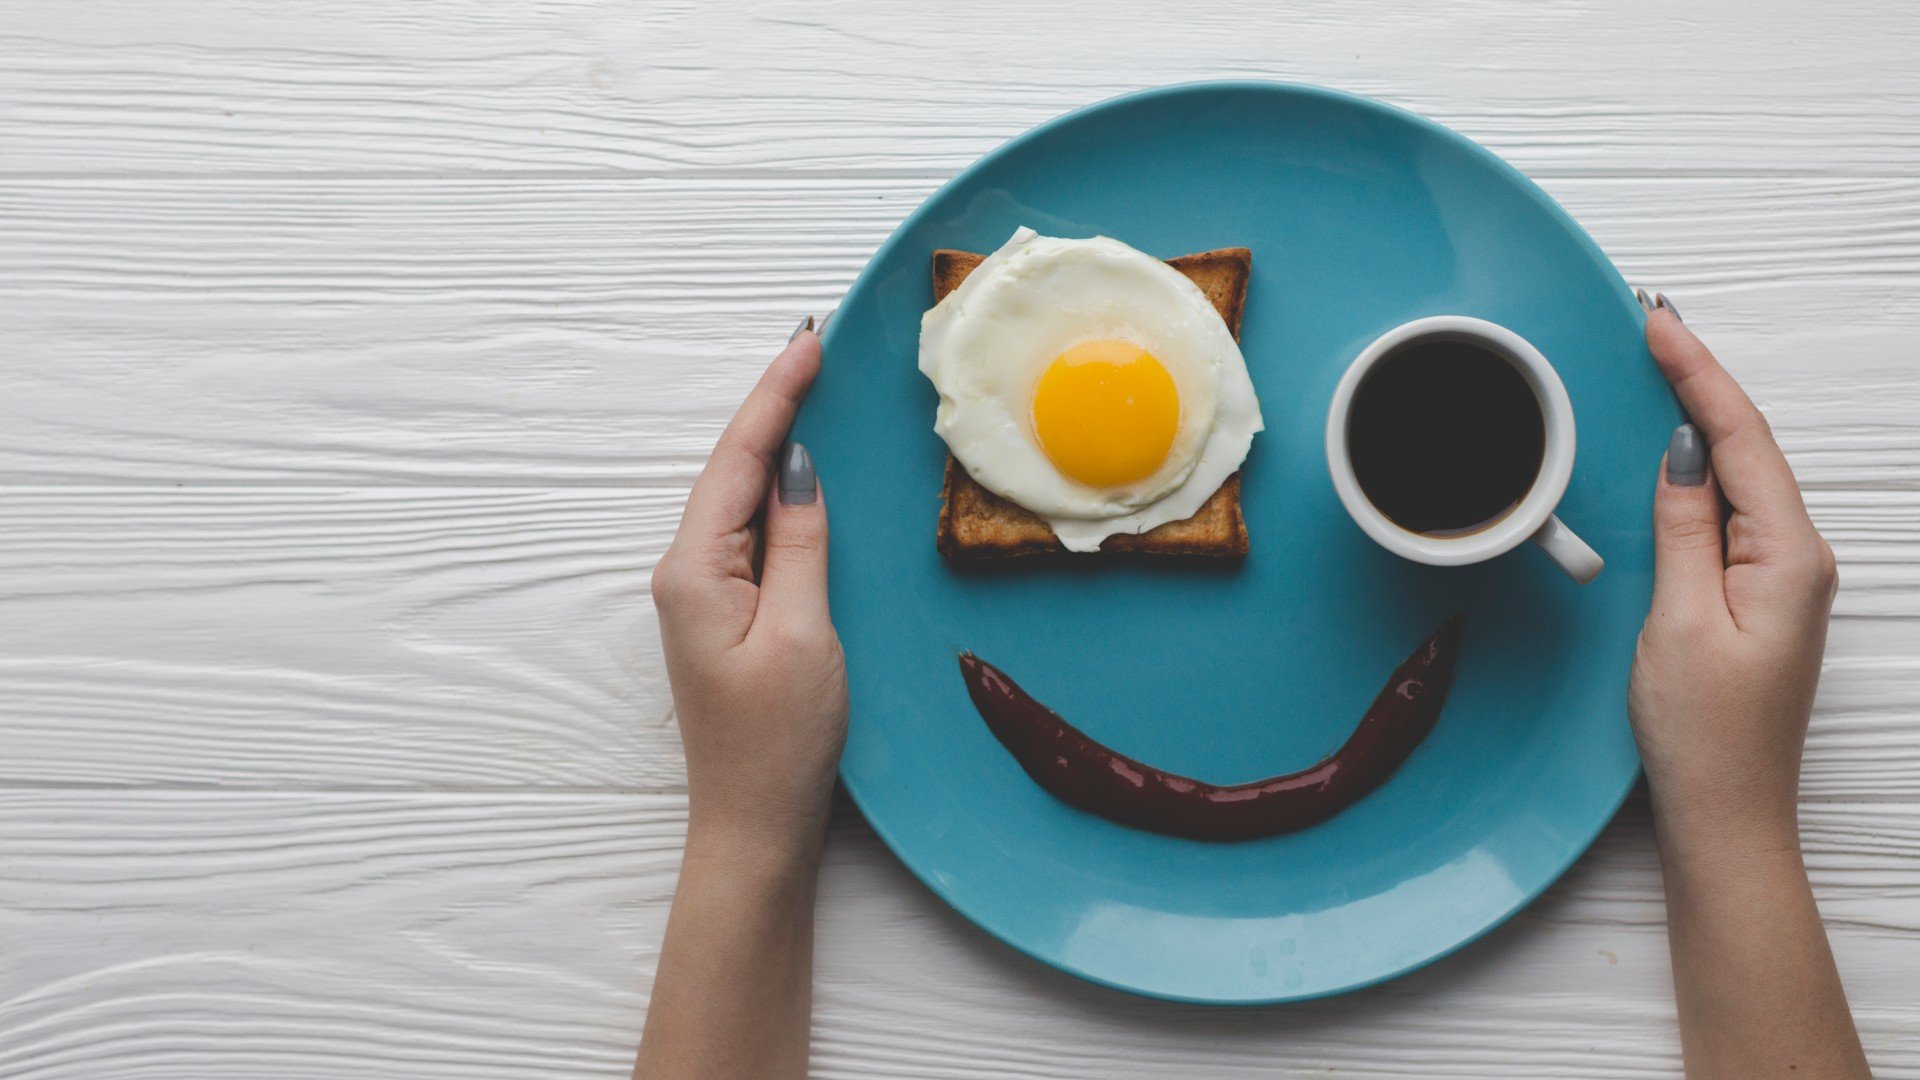 Foto de capa do artigo "Café da manhã saudável: veja ideias para montar o cardápio"